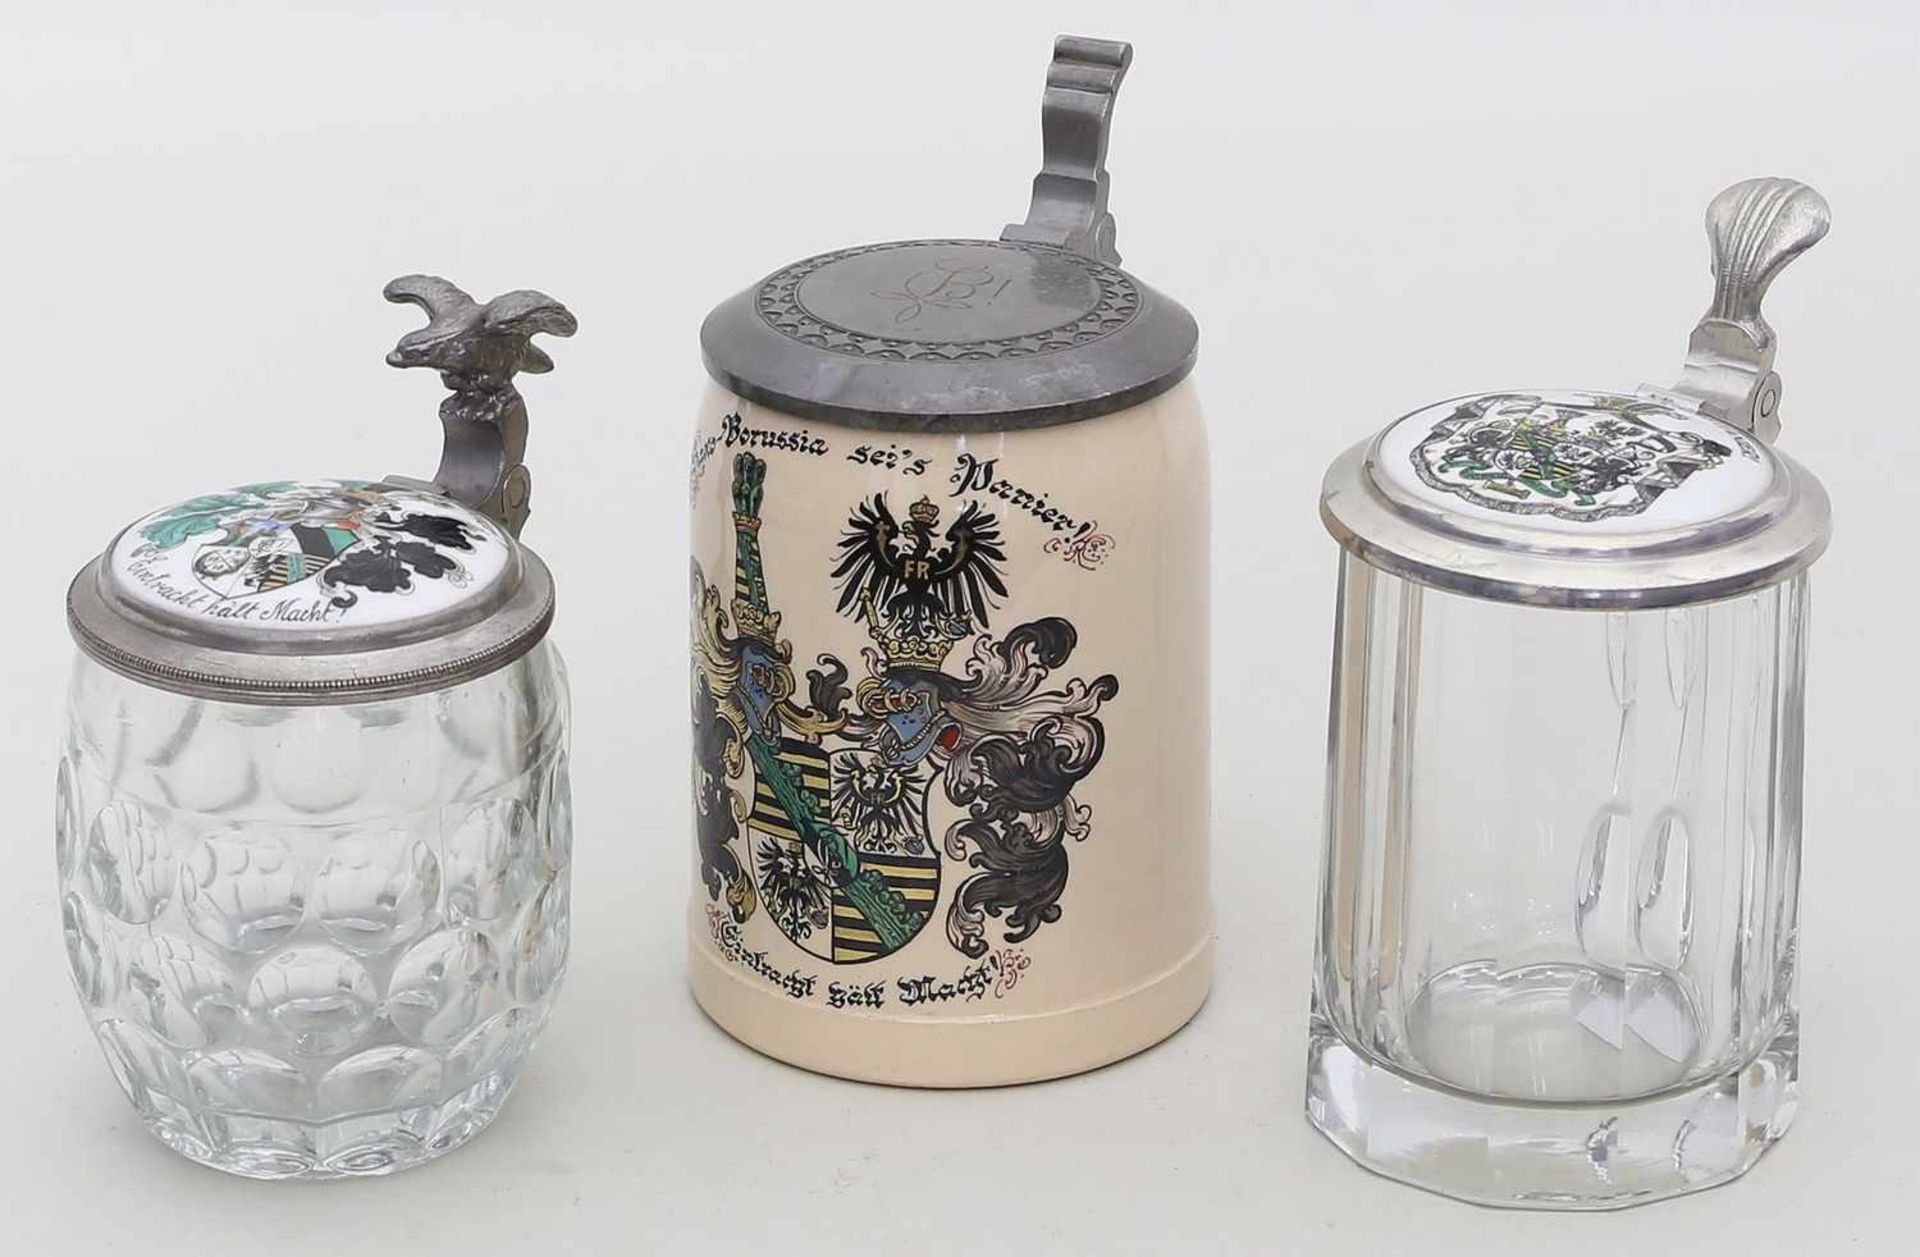 3 studentische Krüge.Div. Formen aus Glas bzw. Keramik und Metall des Corps Saxo-Borussia. Alters-